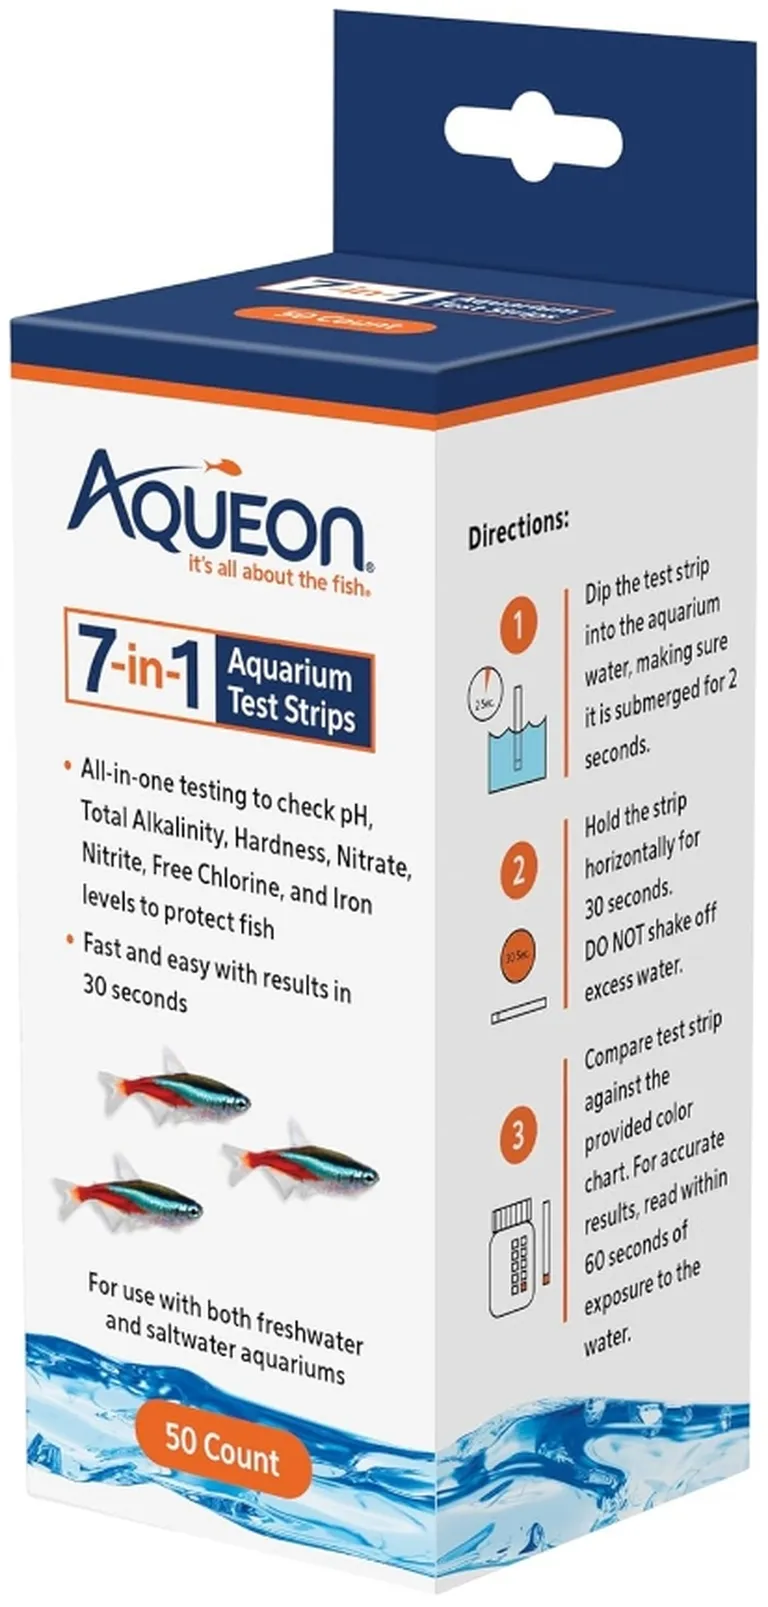 Aqueon 7-in-1 Aquarium Test Strips Photo 1